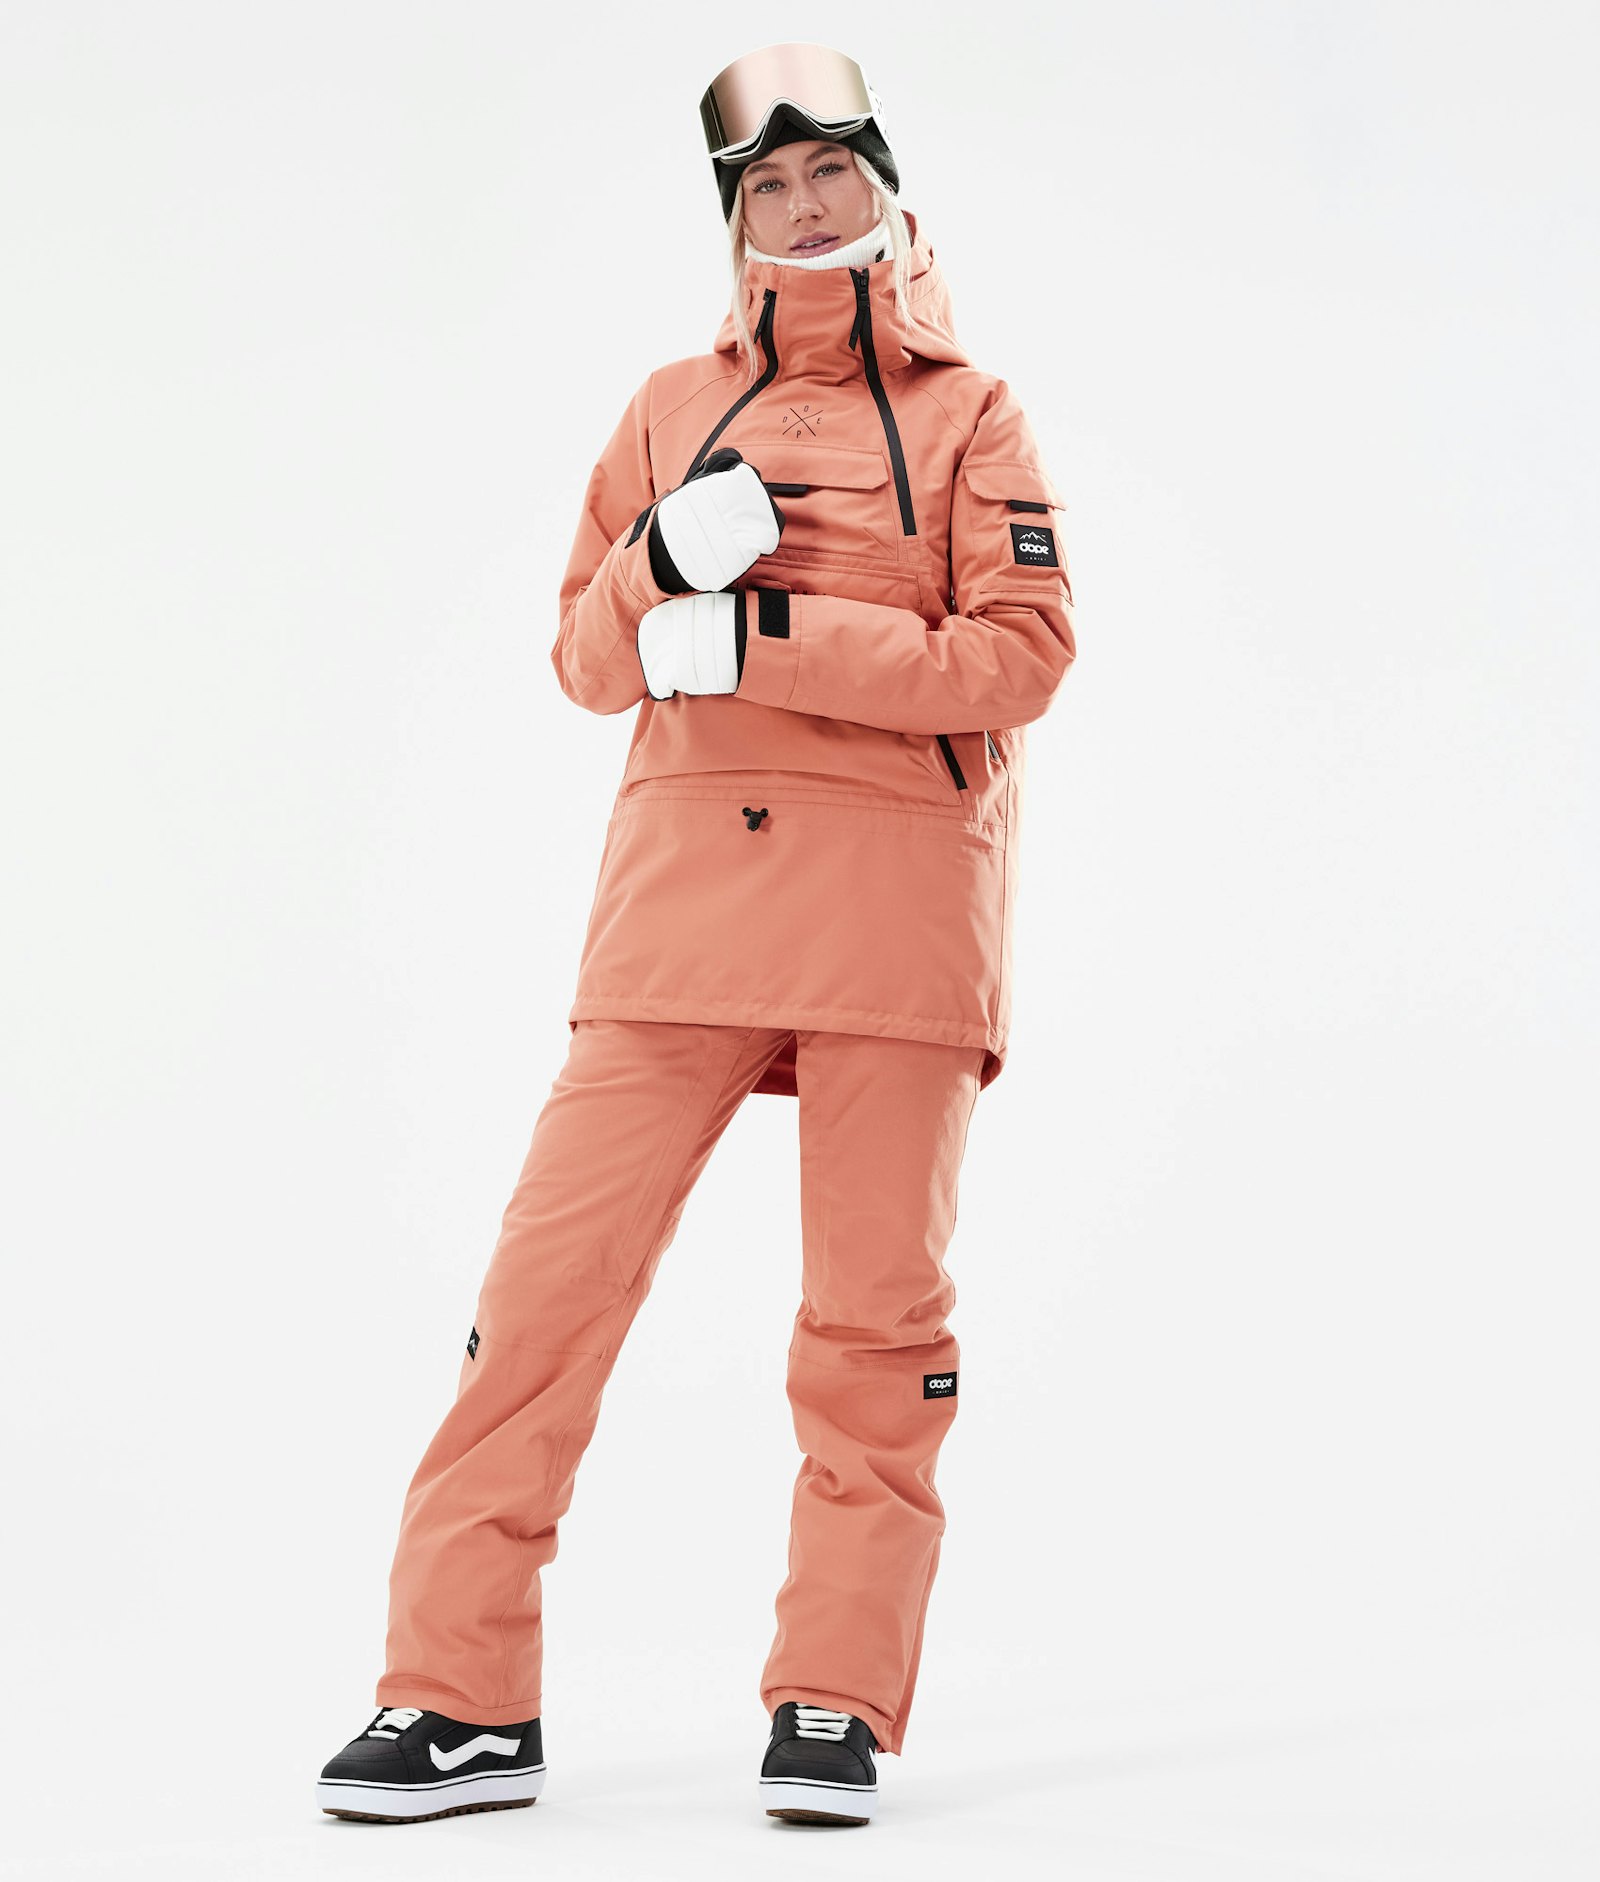 Akin W 2021 Veste Snowboard Femme Peach Renewed